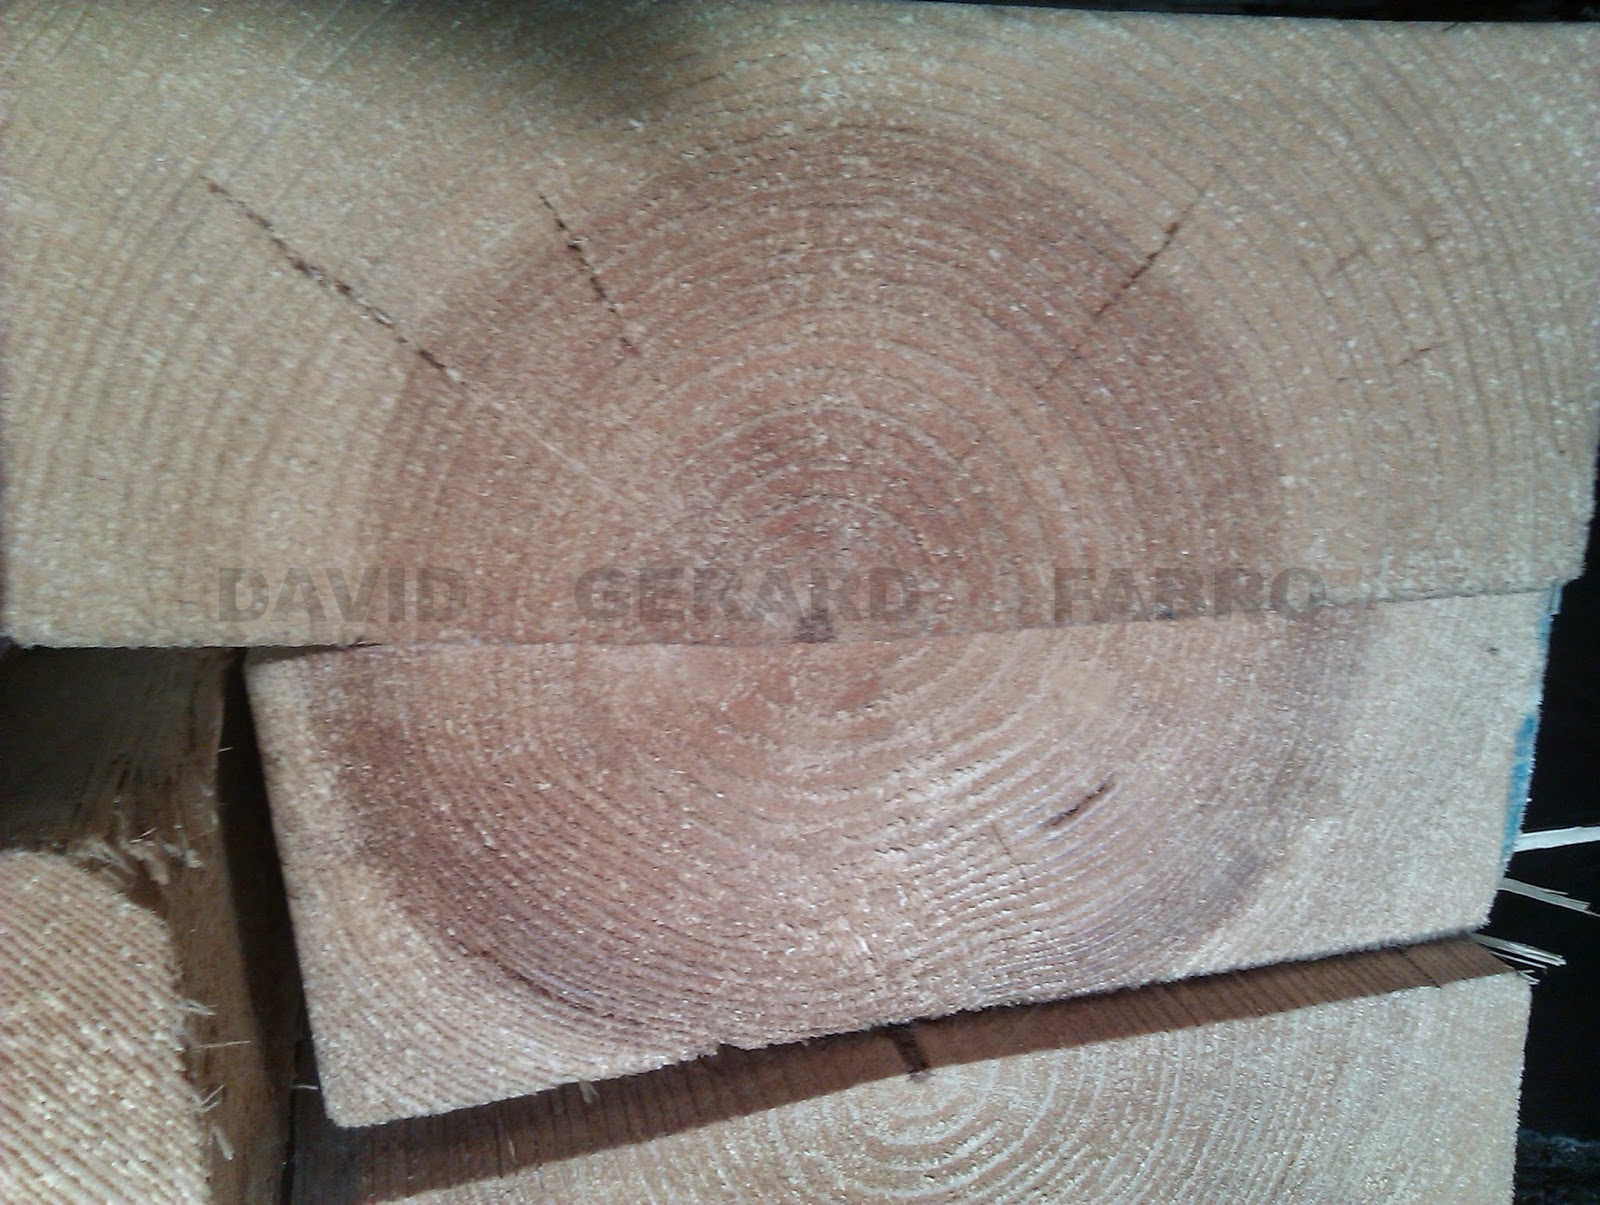 Sección de un tronco de árbol con sus anillos